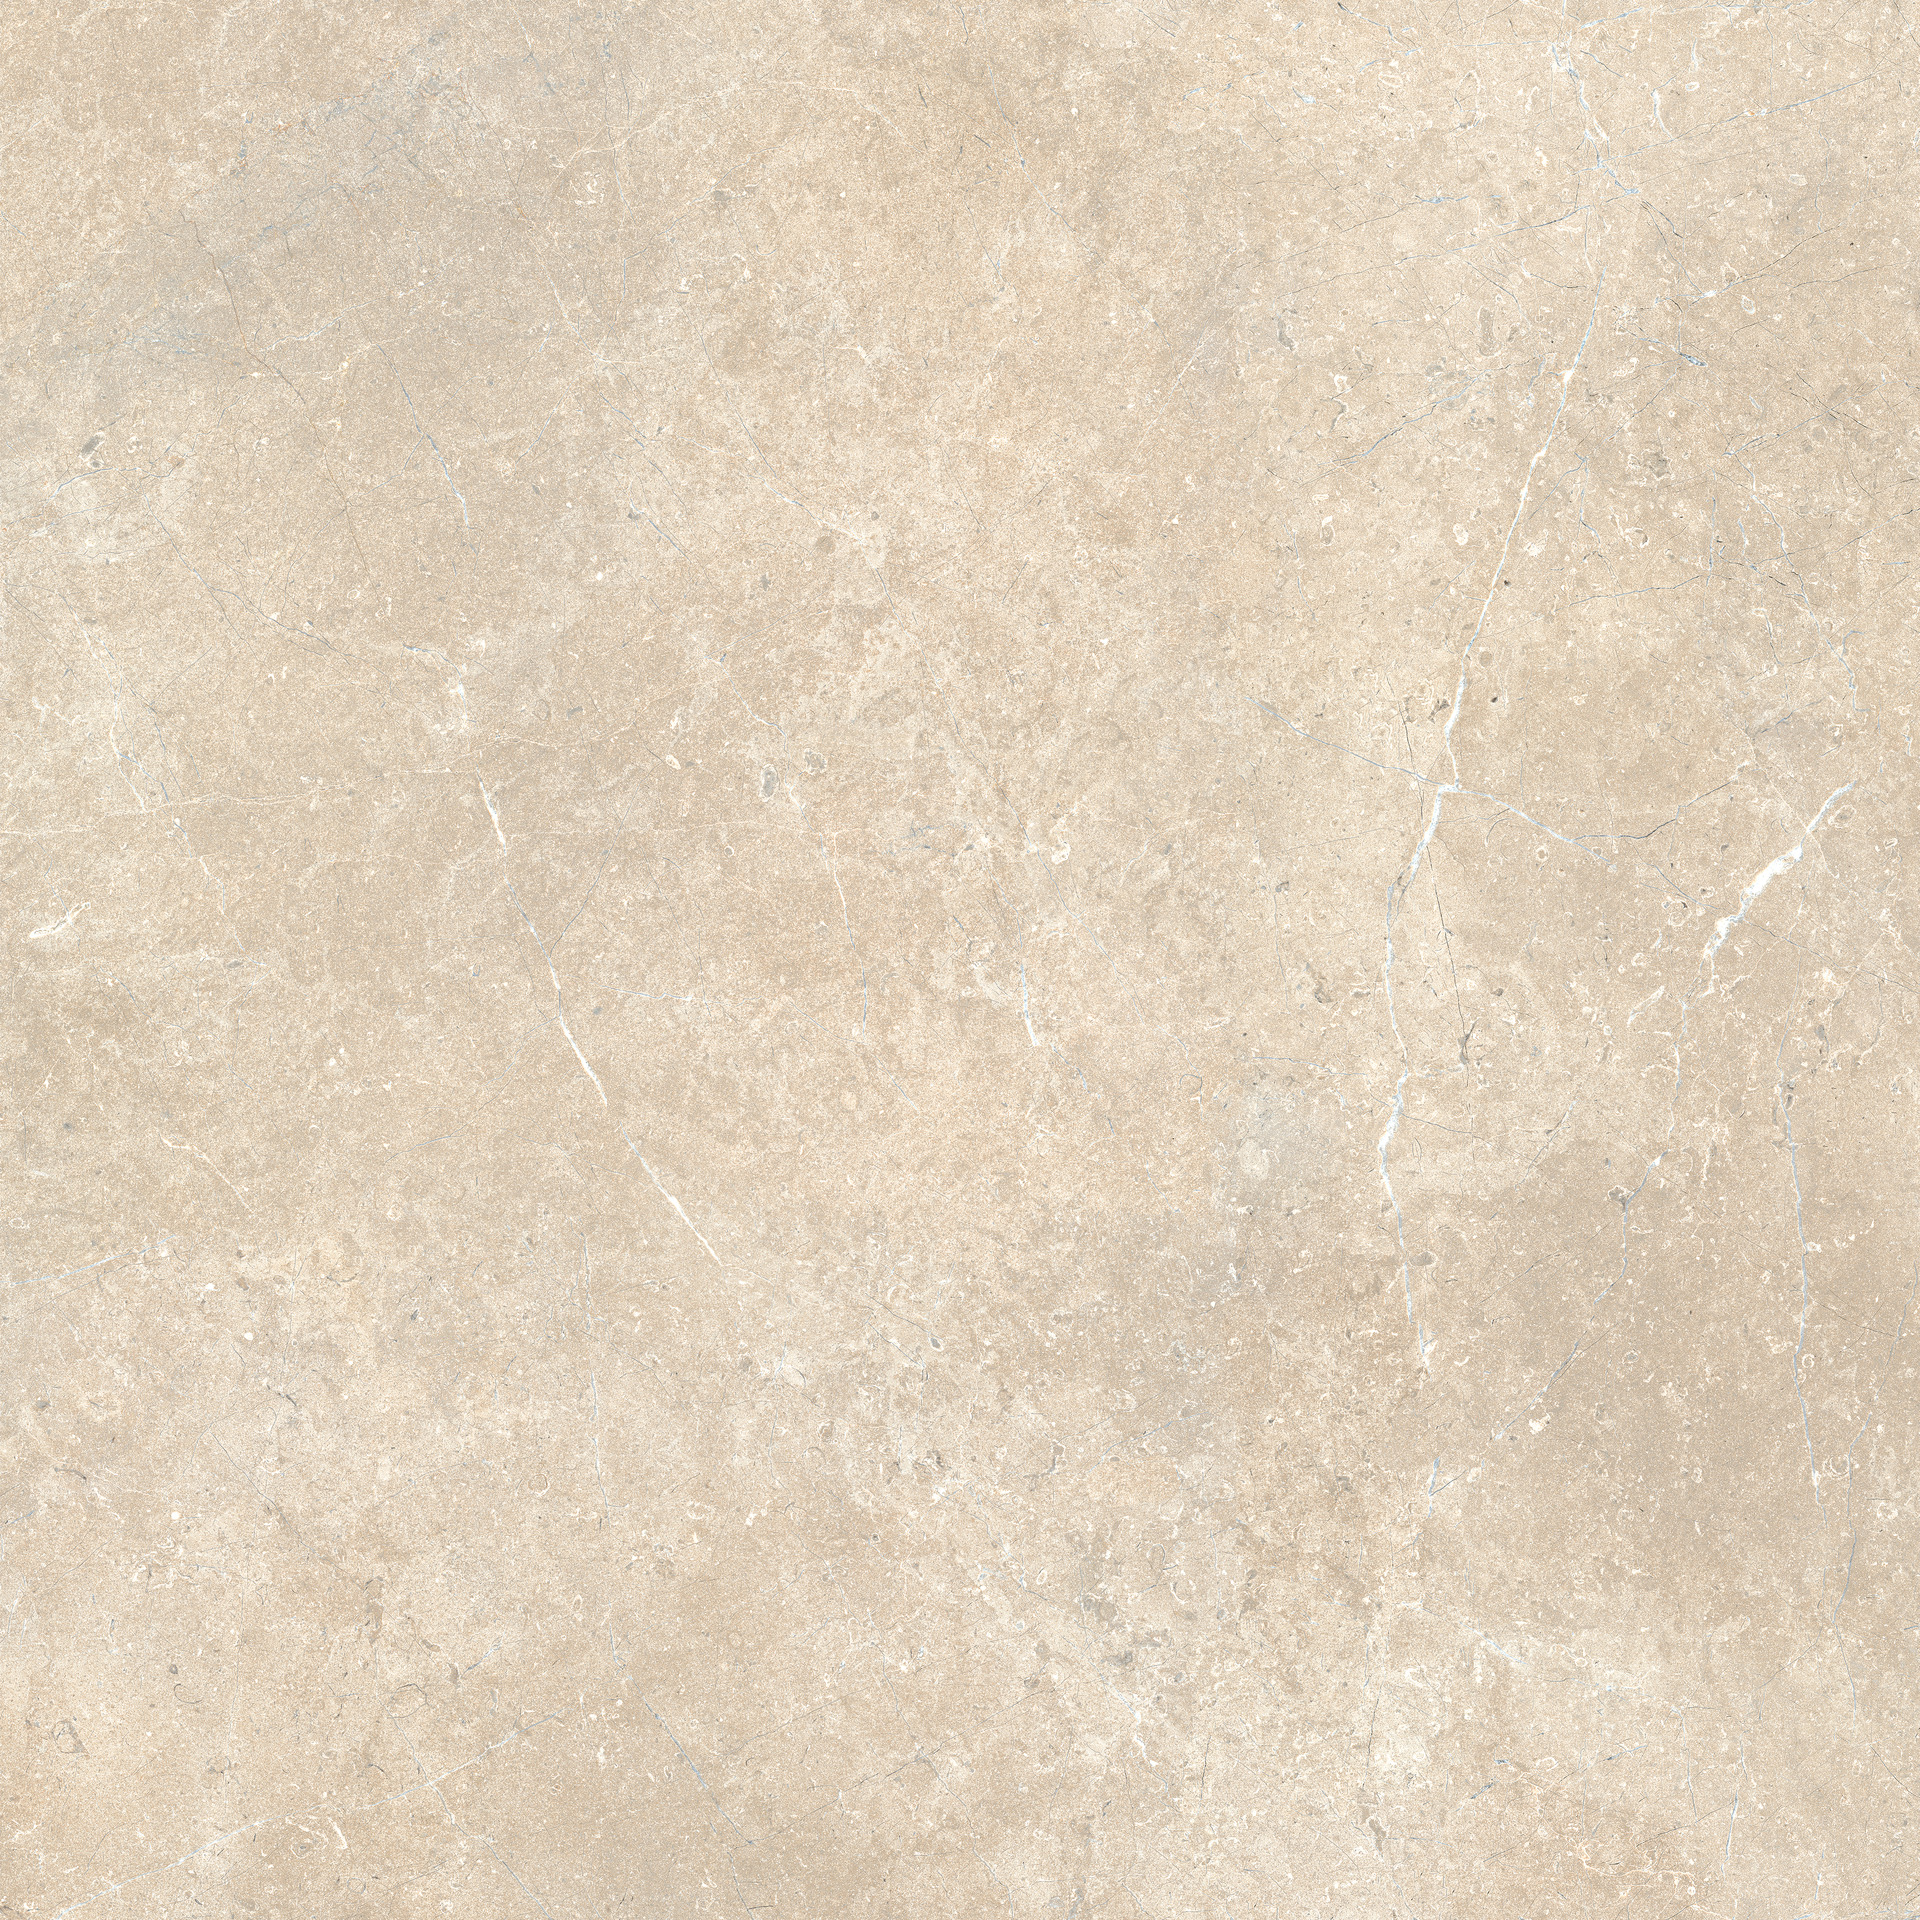 Bodenfliese,Wandfliese Marazzi Mystone Limestone Sand Naturale – Matt Sand M908 matt natur 120x120cm rektifiziert 9,5mm